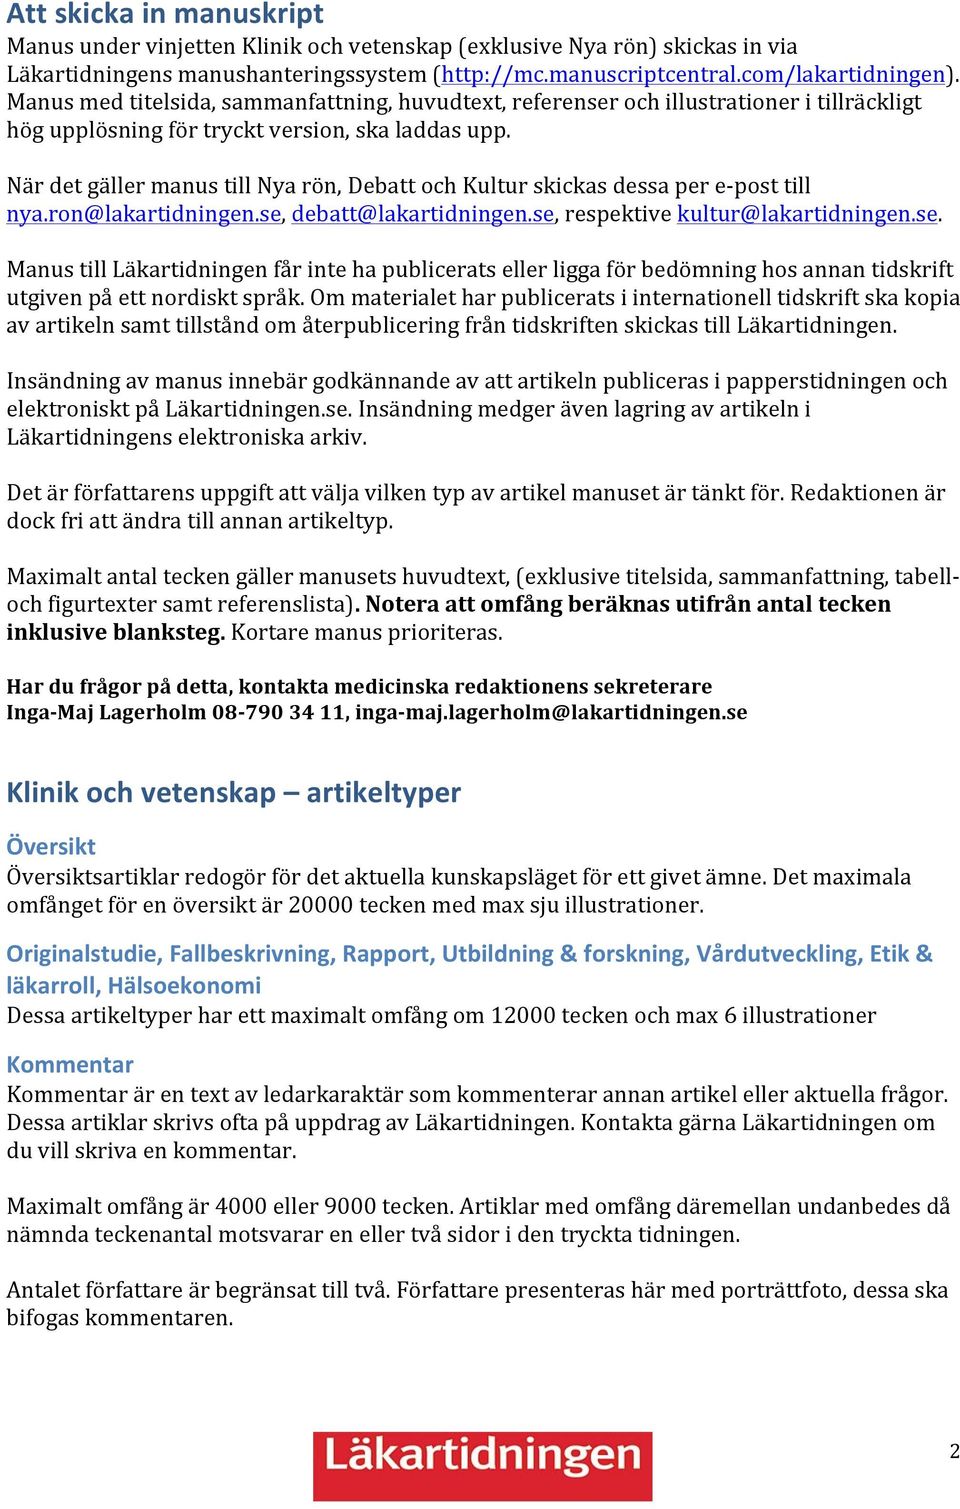 När det gäller manus till Nya rön, Debatt och Kultur skickas dessa per e- post till nya.ron@lakartidningen.se,